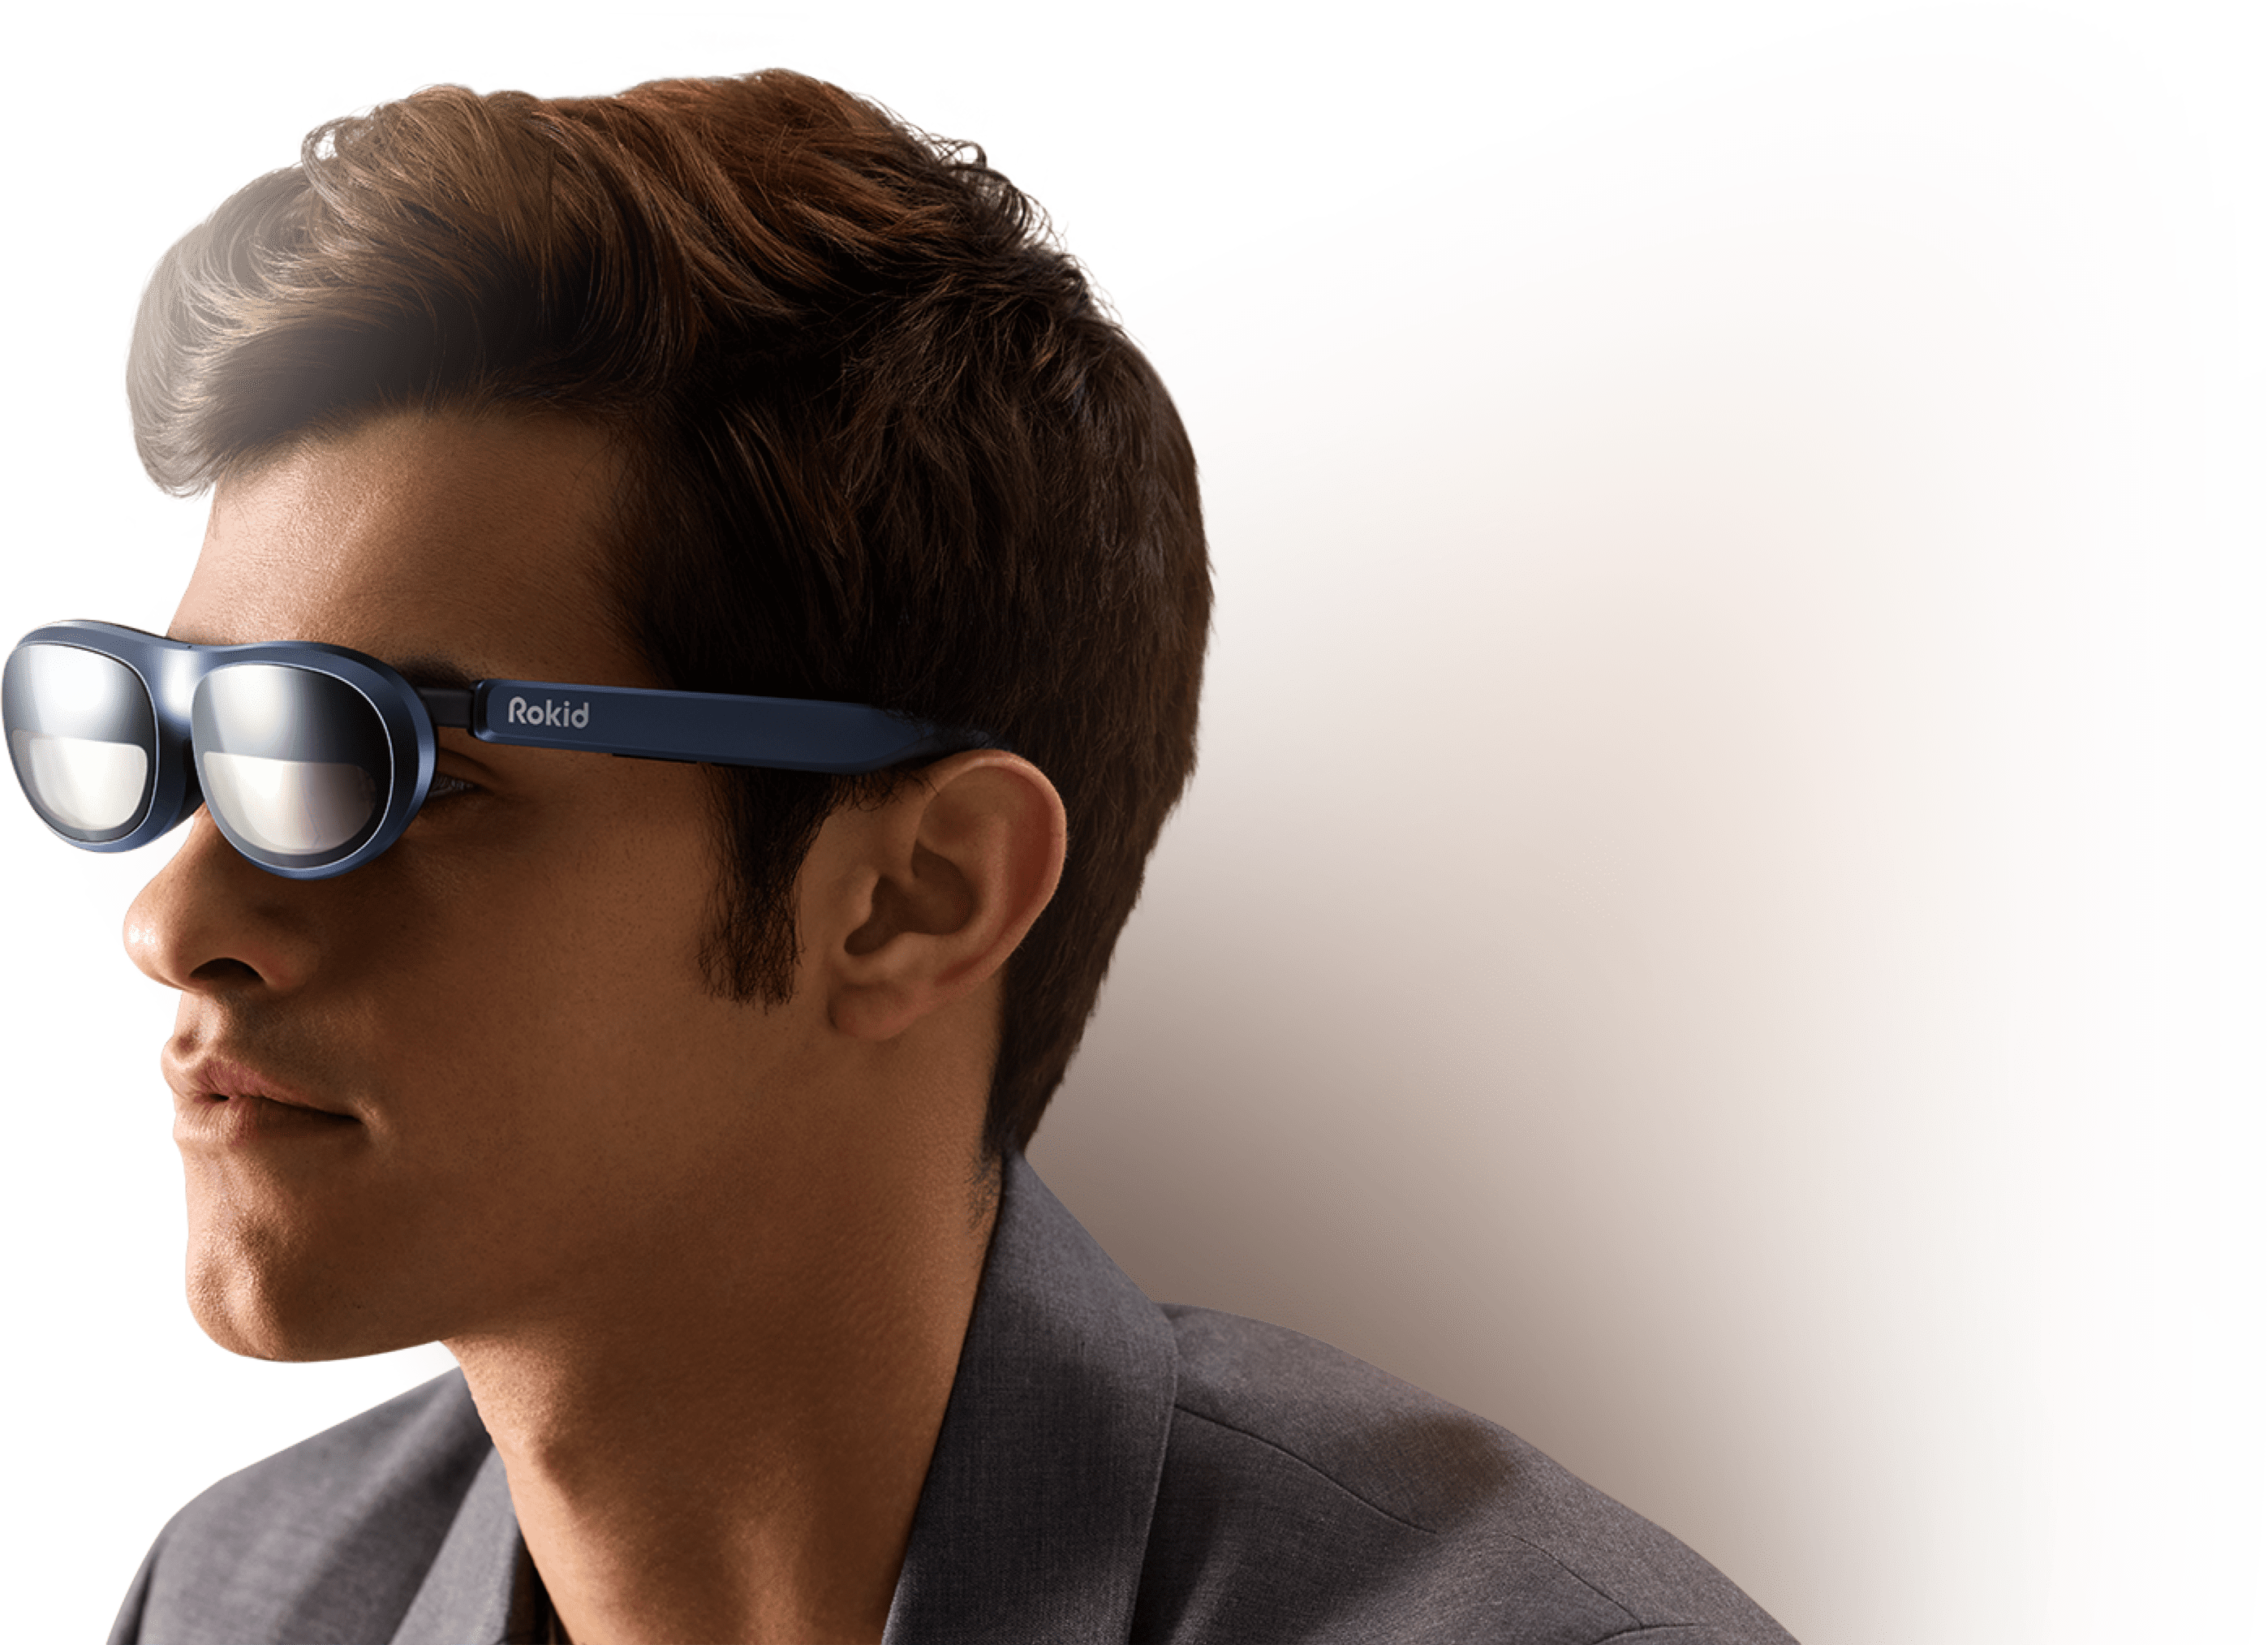 ผู้ชายสวมแว่นตา Rokid Max Augmented Reality